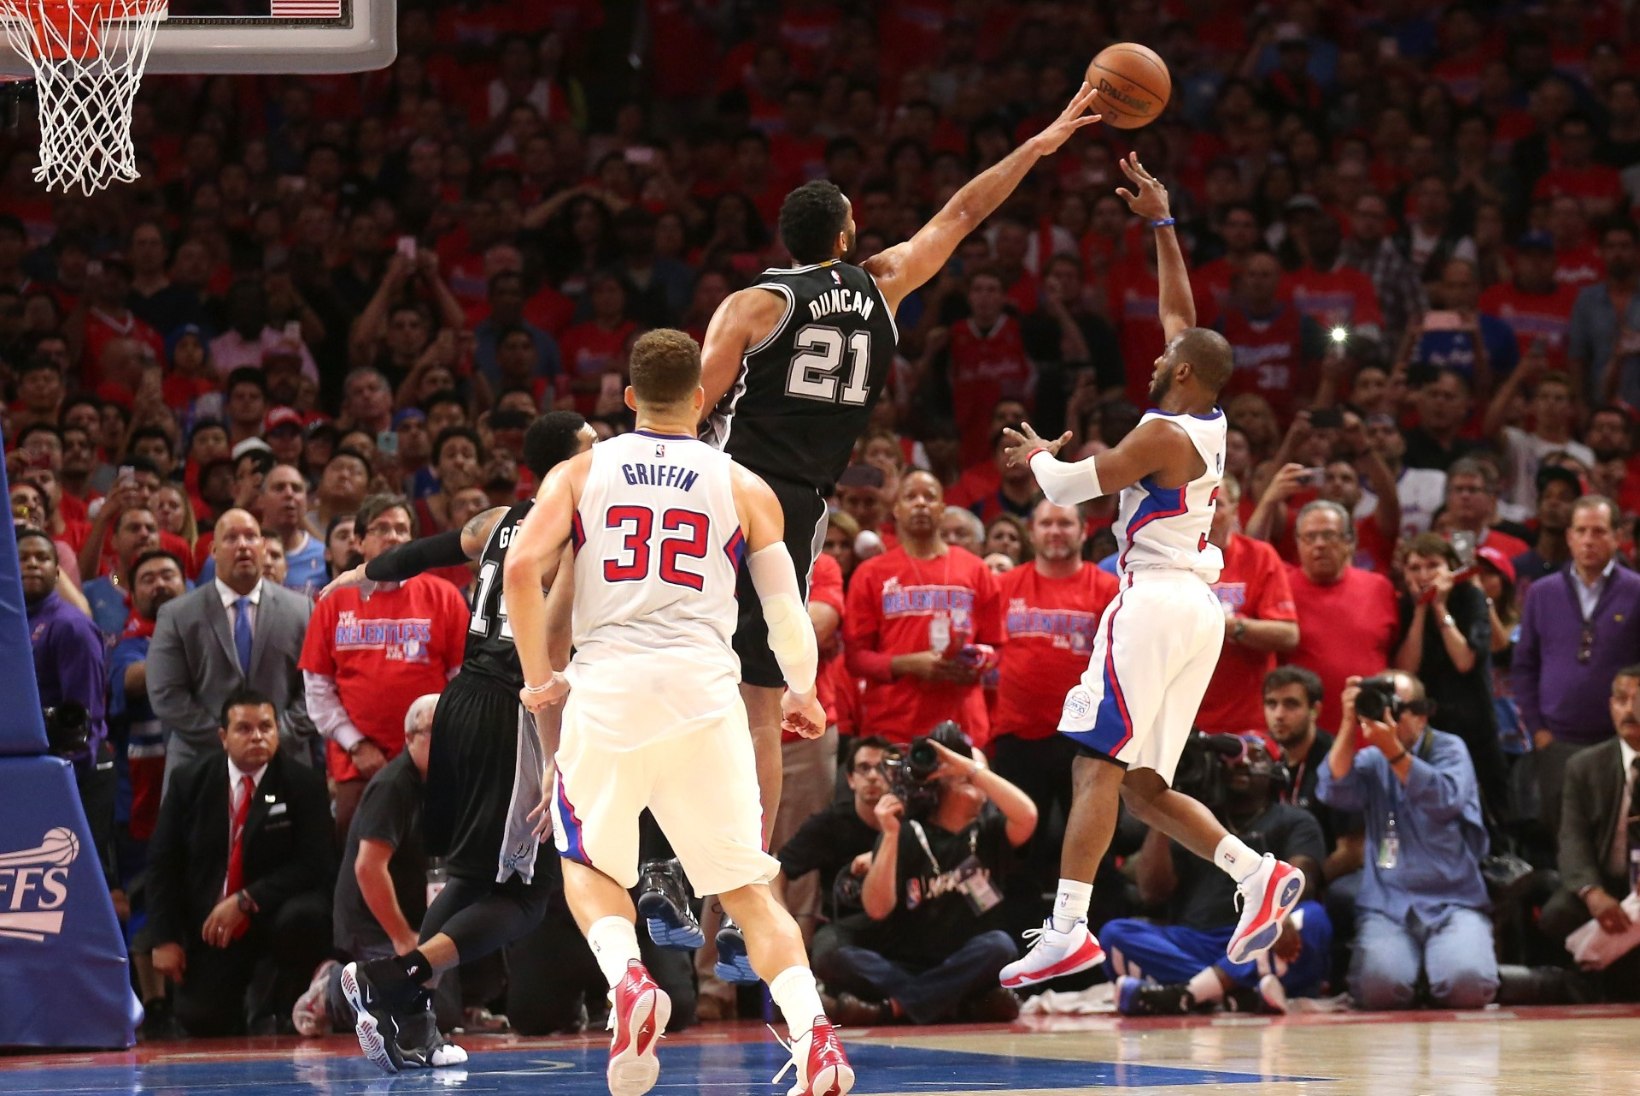 Kas poolvigane Chris Paul tõmbas San Antonio Spursi dünastiale (ja ühele ajastule) joone peale? 